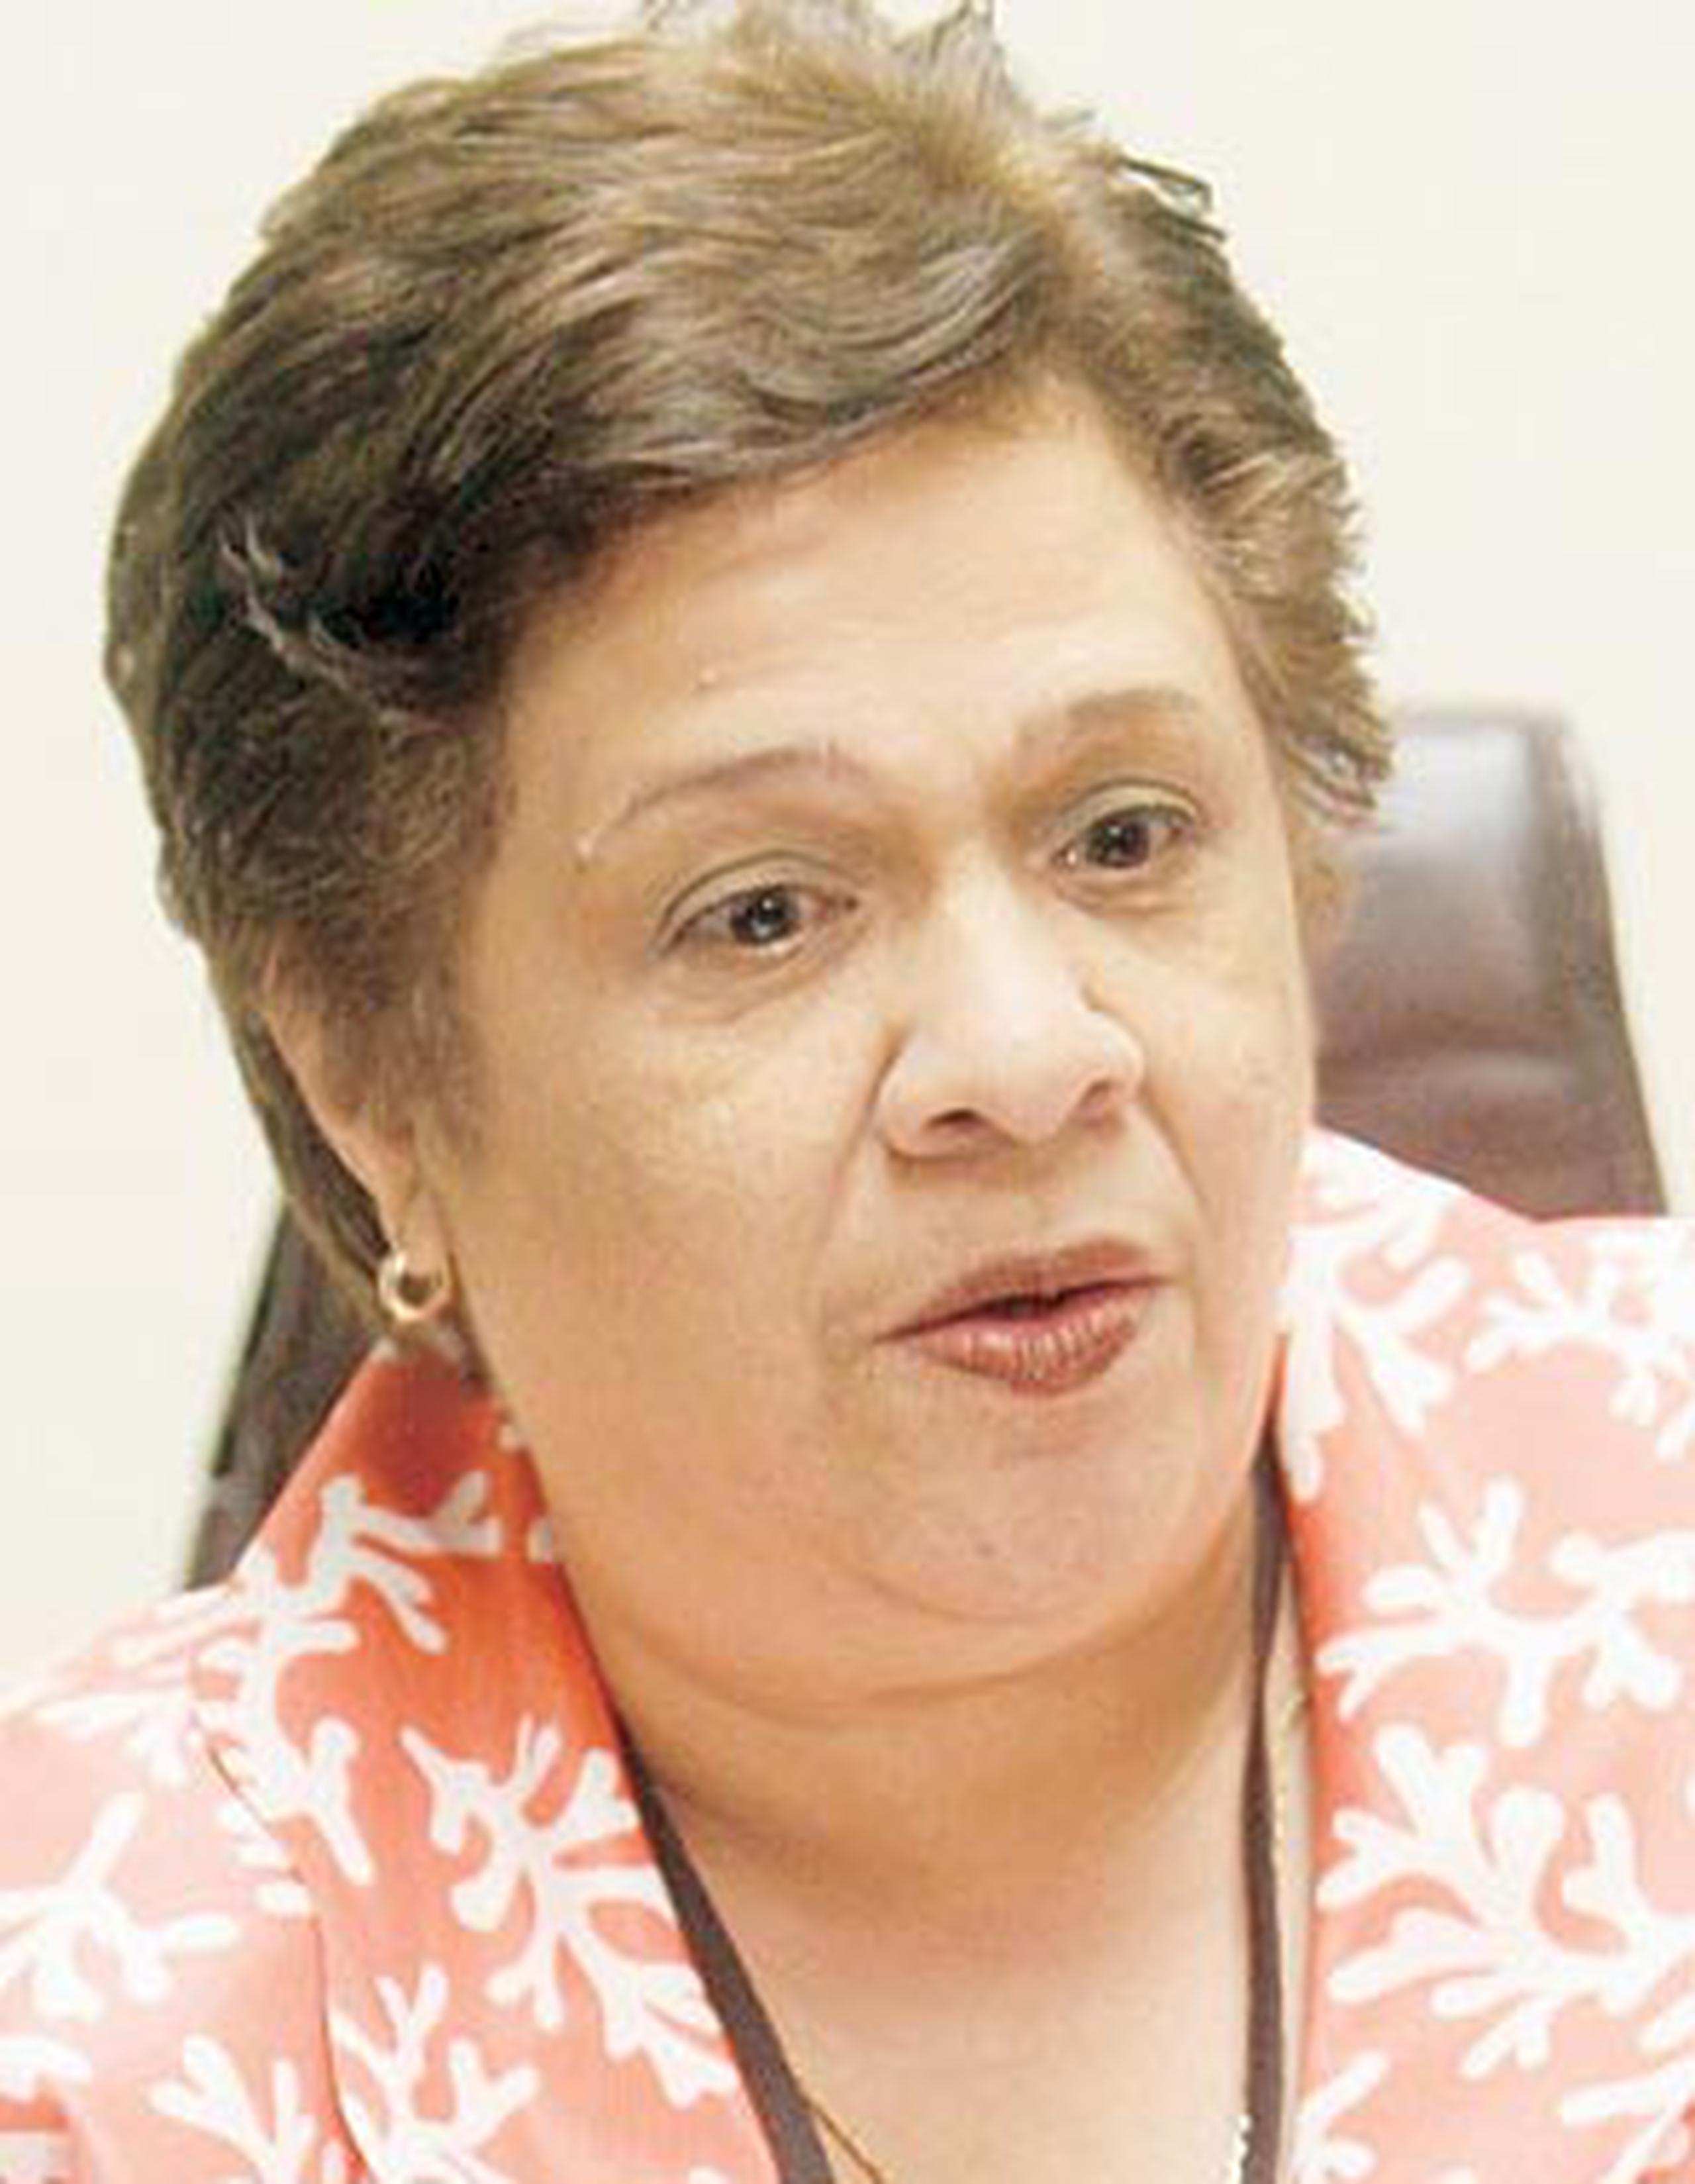 La presidenta del Comité Ad Hoc de la CEE, Carmen Ana Pesante Martínez, supuestamente renunció tras denunciar la inacción en la pesquisa sobre el fraude electoral en Cataño. (Archivo)